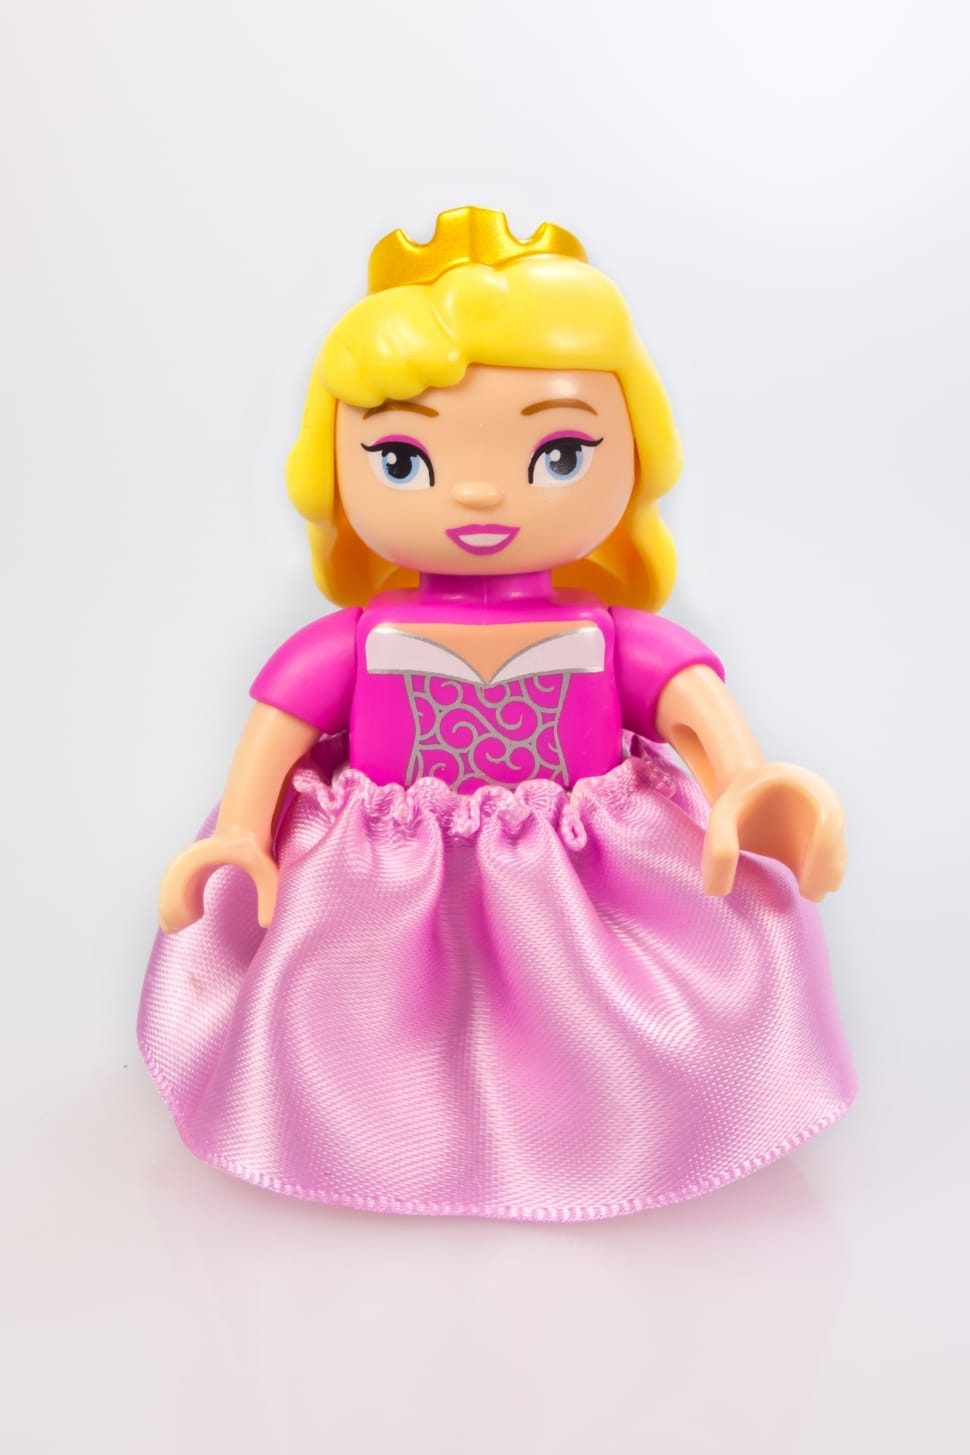 disney princess lego minifig preview